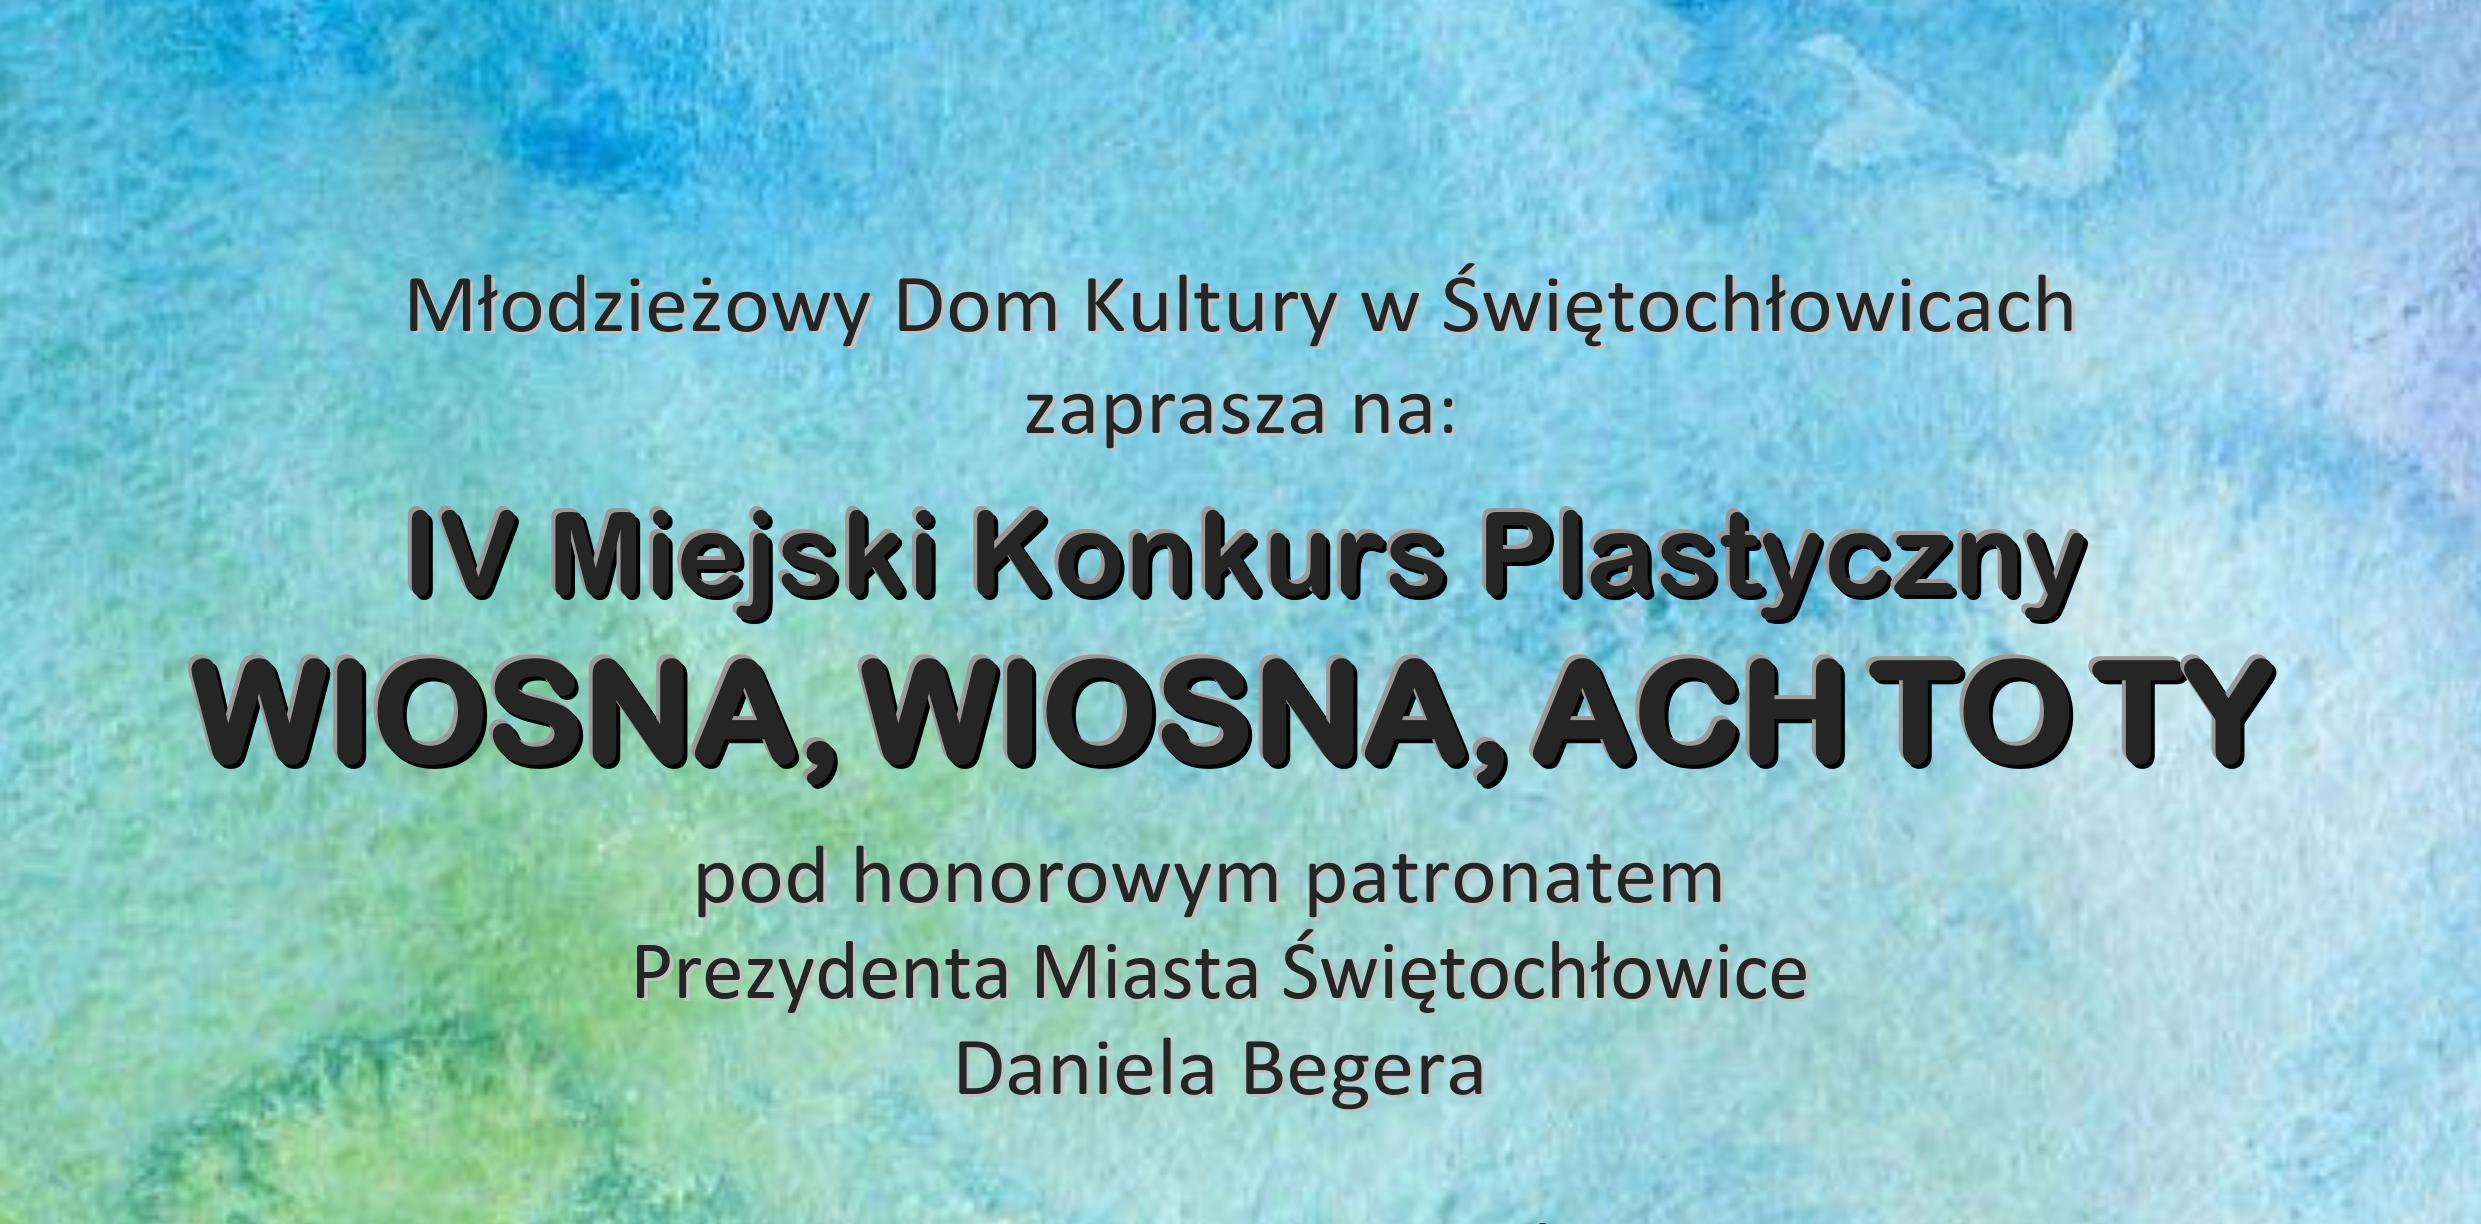 IV Miejski Konkurs Plastyczny ''WIOSNA, WIOSNA, ACH TO TY''